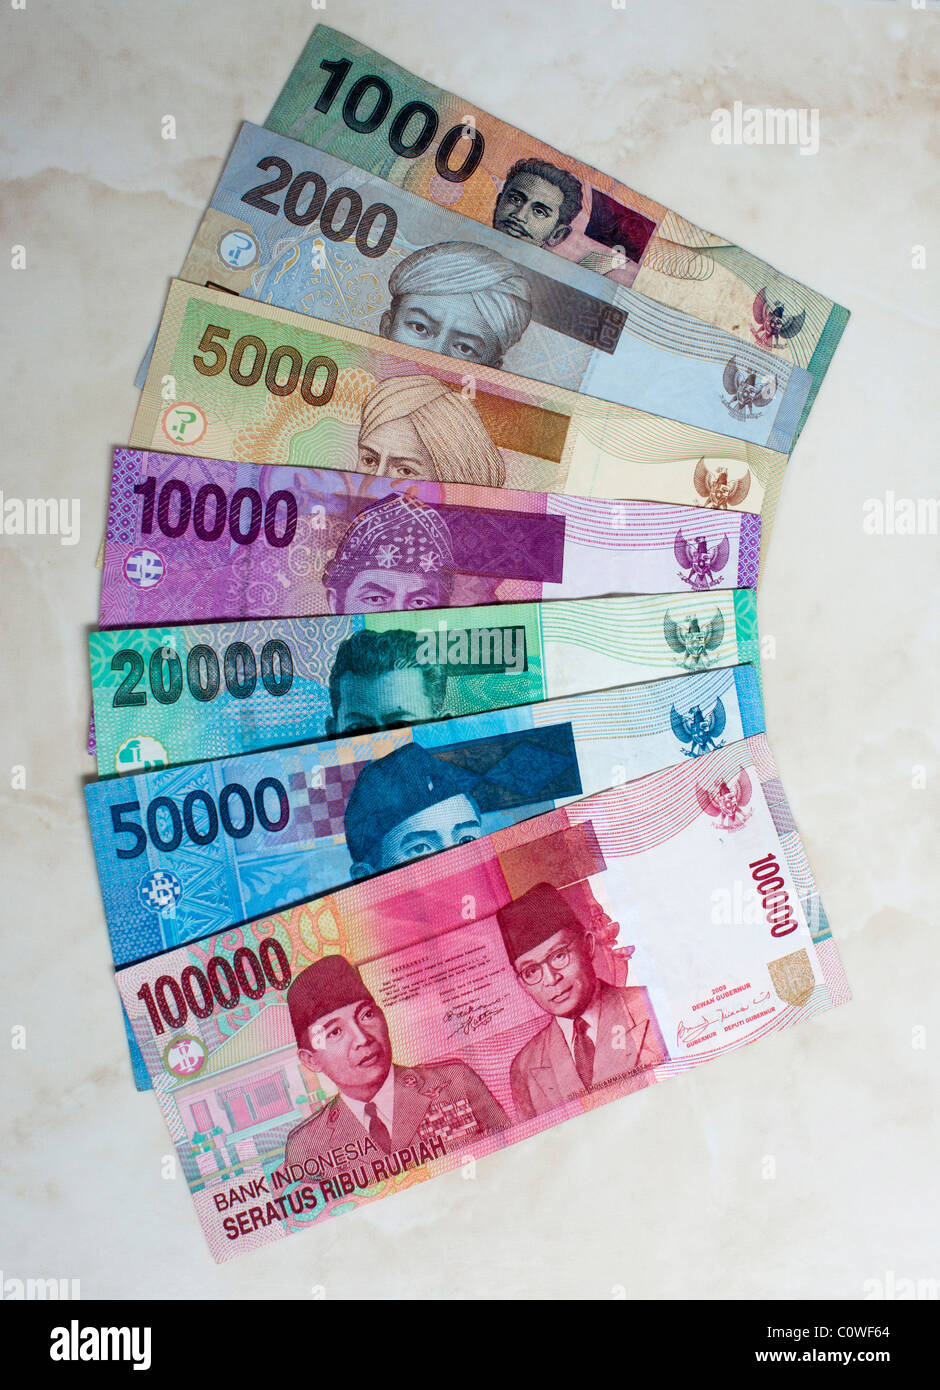 Indonesische Geldscheine von 100.000 bis 1000 rupiah Stockfoto